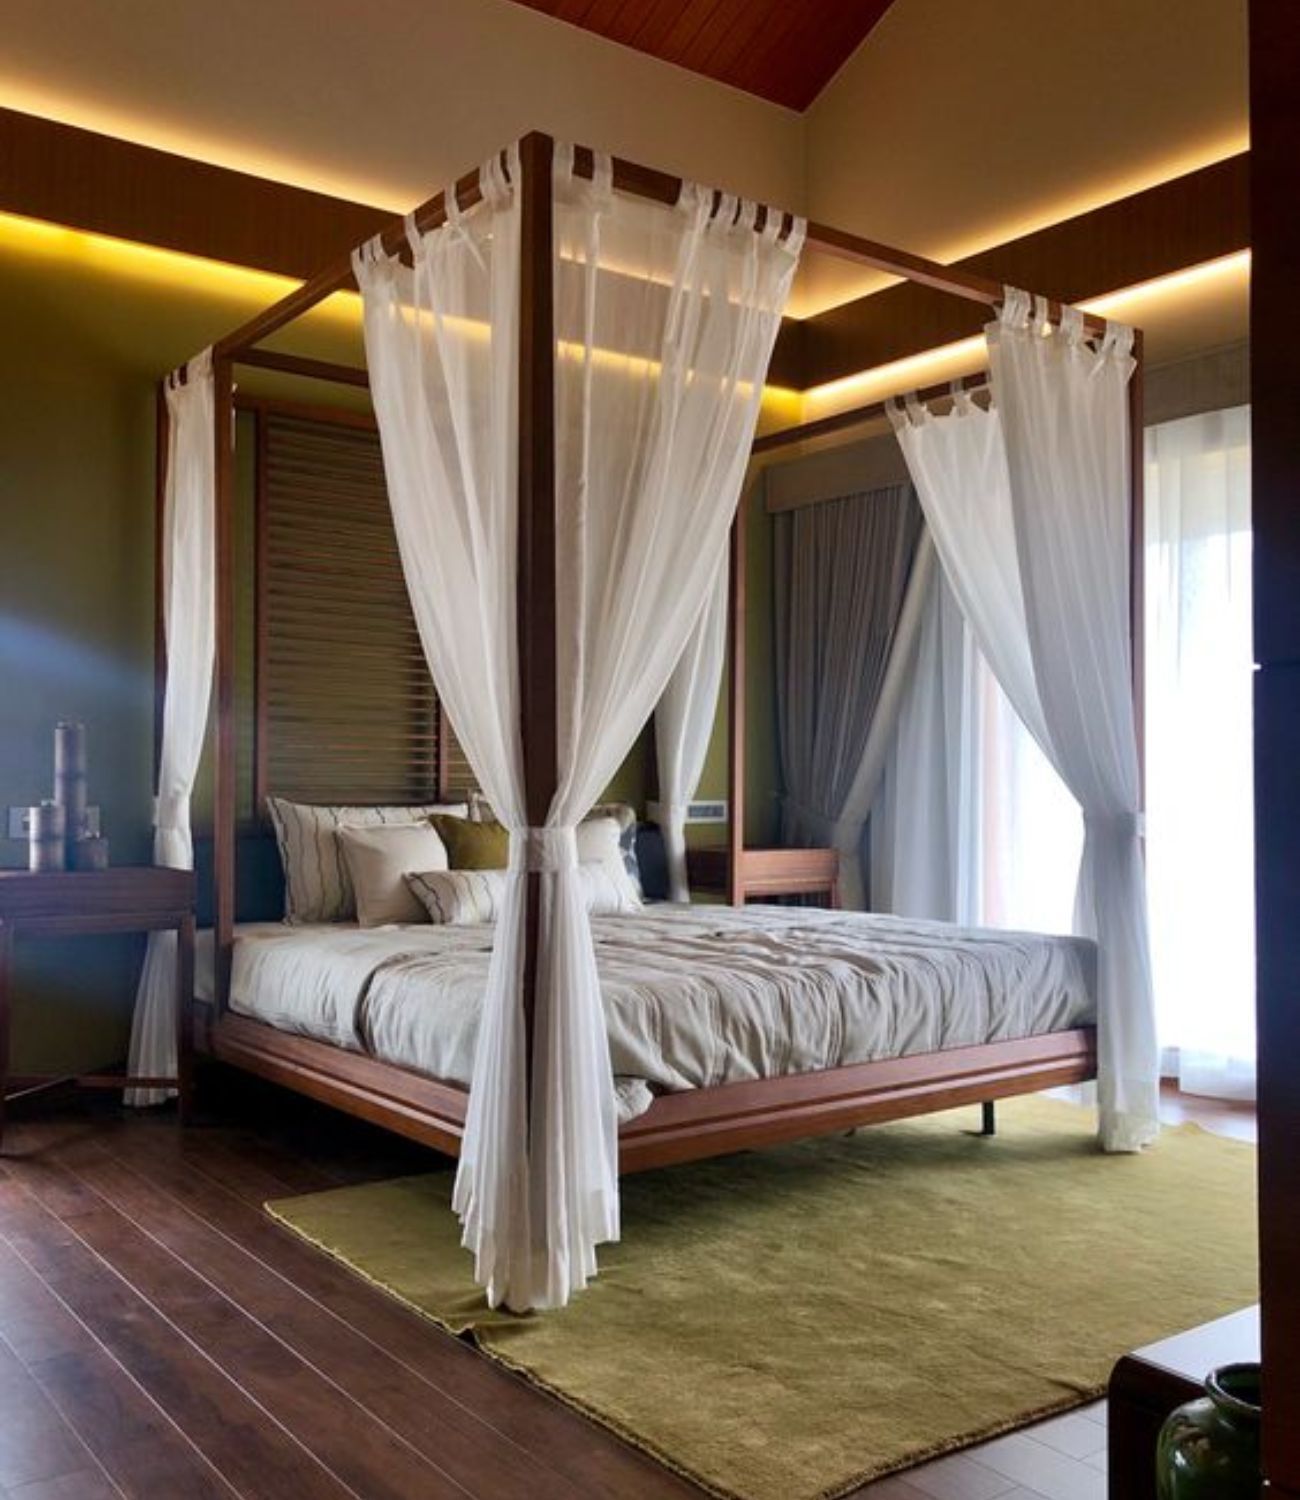 Khung và giường làm từ gỗ xoan đào kết hợp màn voan trắng thơ mộng